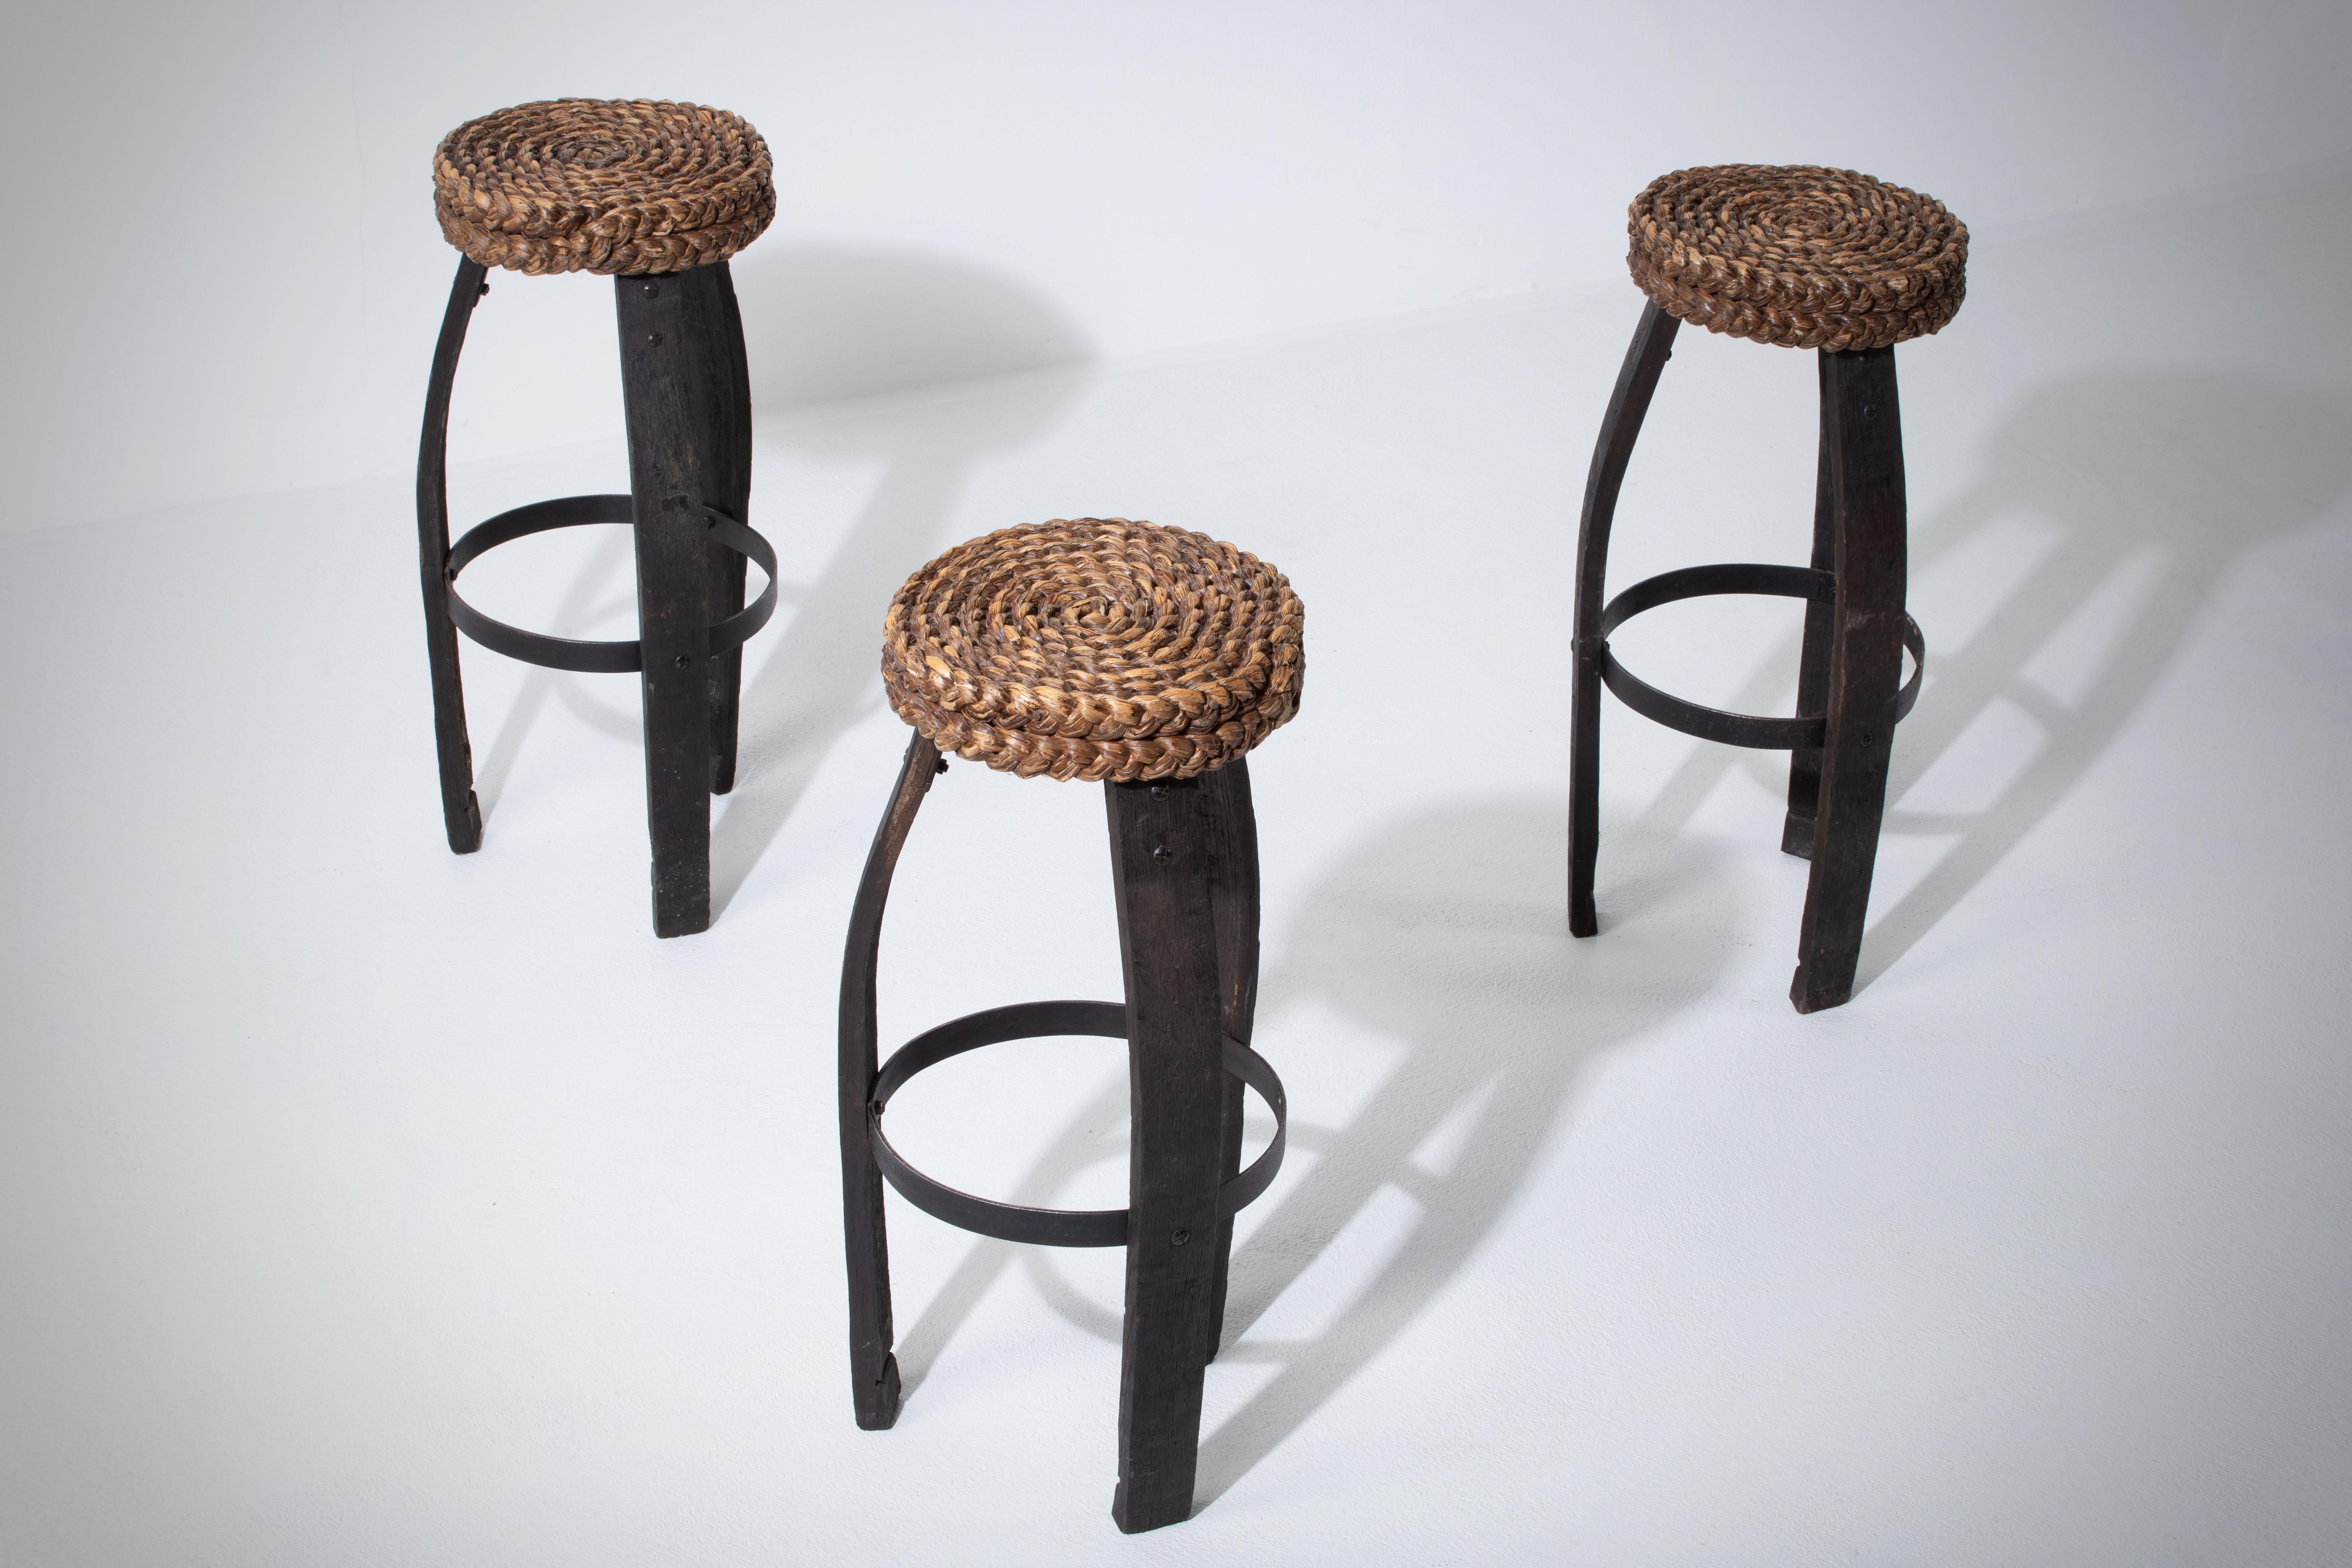 Tabouret de bar en chêne avec siège en rotin tressé, créé par les designers français Adrien Audoux et Frida Minet. France, années 1950.

Le siège est constitué d'épaisses tresses circulaires en roseau. Les pieds sont en chêne foncé et en fer, ce